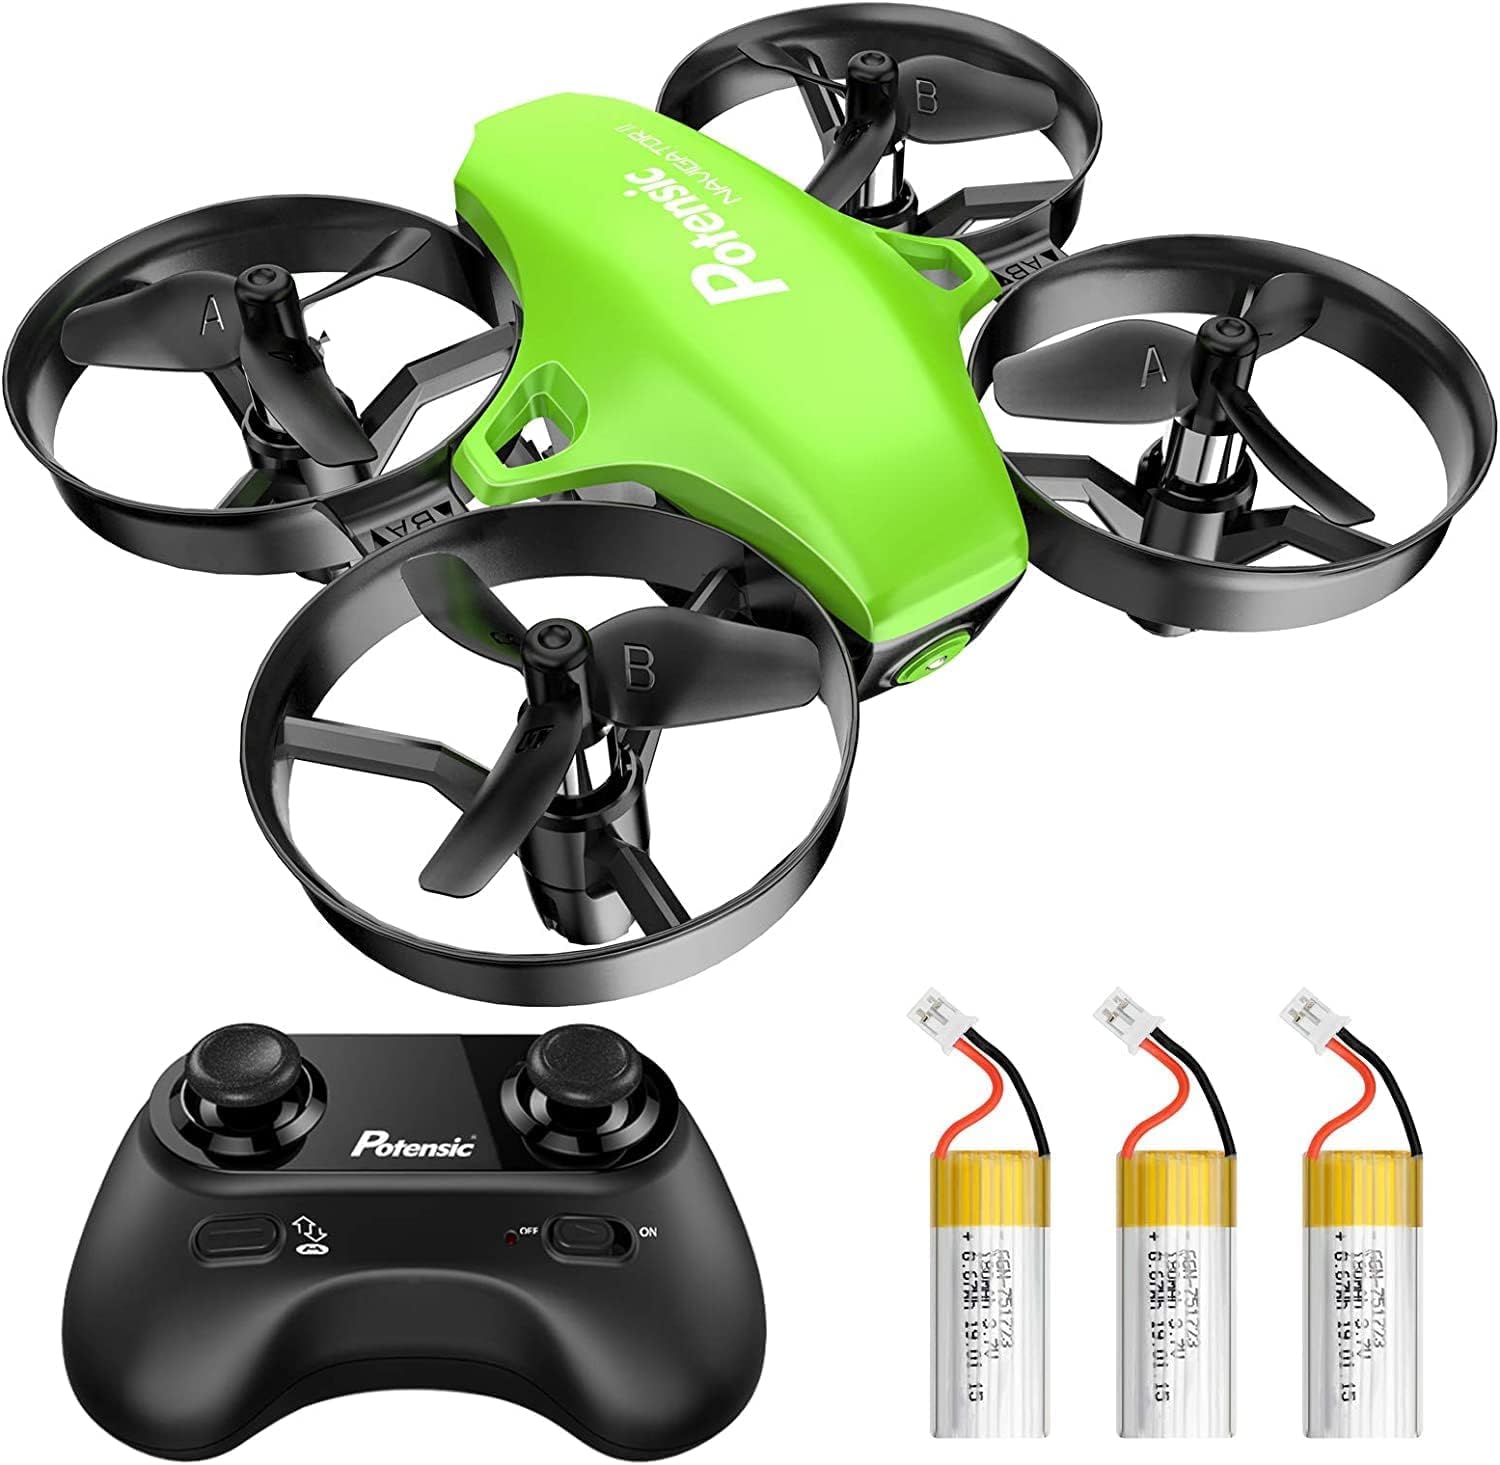 Potensic Mini Drohne für Kinder und Anfänger mit 3 Akkus, RC Quadrocopter, Mini Drone mit Höhenhaltemodus, Start/Landung mit einem Knopfdruck, Kopflos Modus, Spielzeug Drohne Helikopter A20 Grün von Potensic